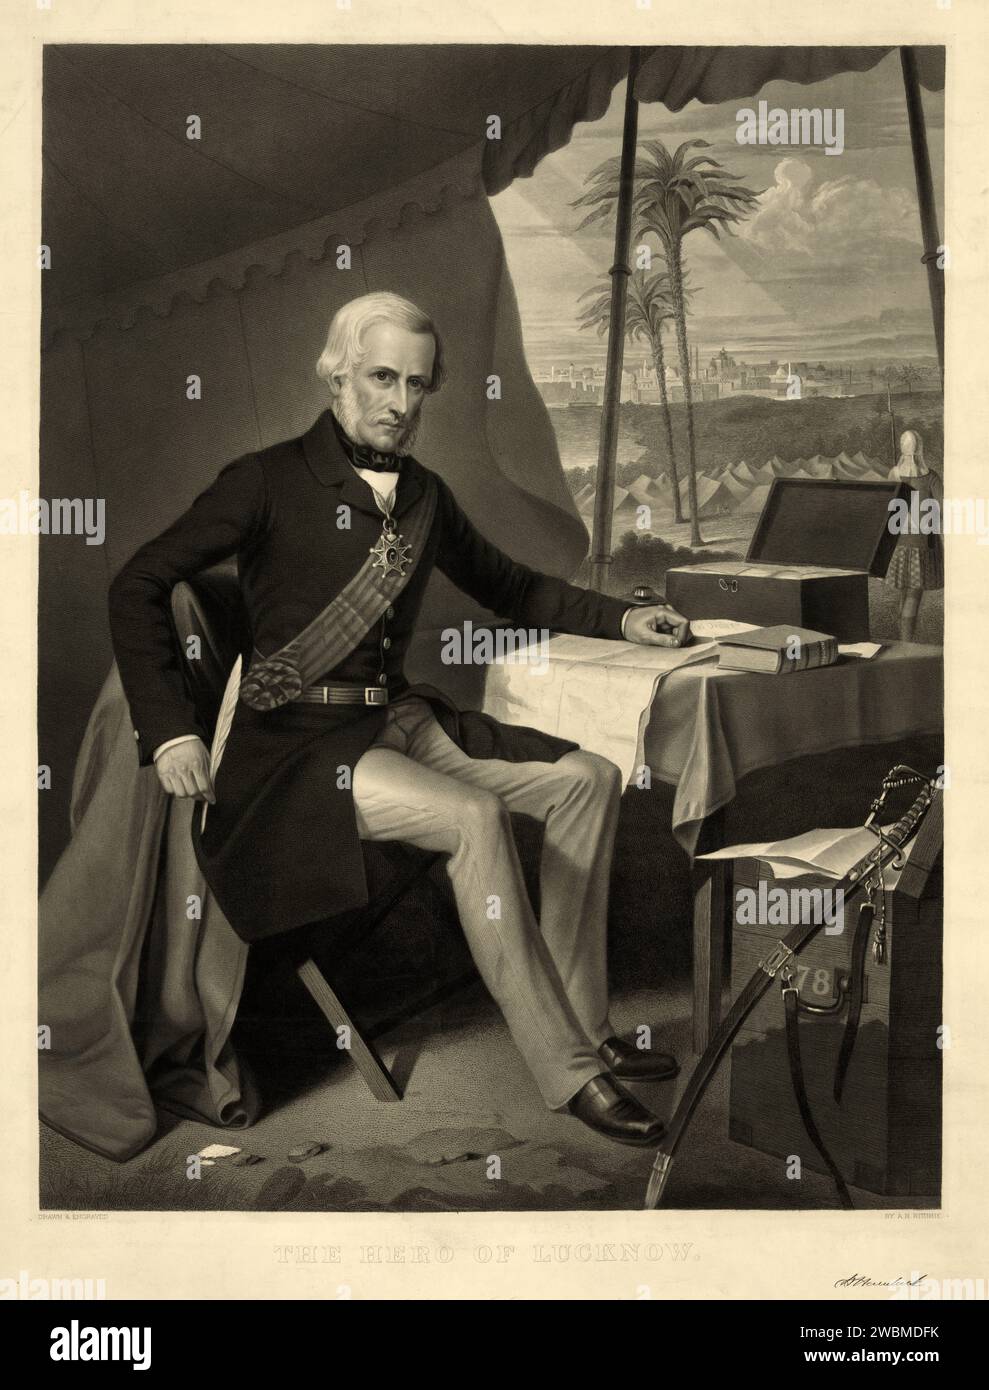 Porträt von Sir Henry Havelock, dem Held von Lucknow, einem britischen General, der besonders mit Indien und seiner Rückeroberung Cawnpores während der Indianeraufstände von 1857 verbunden ist Stockfoto